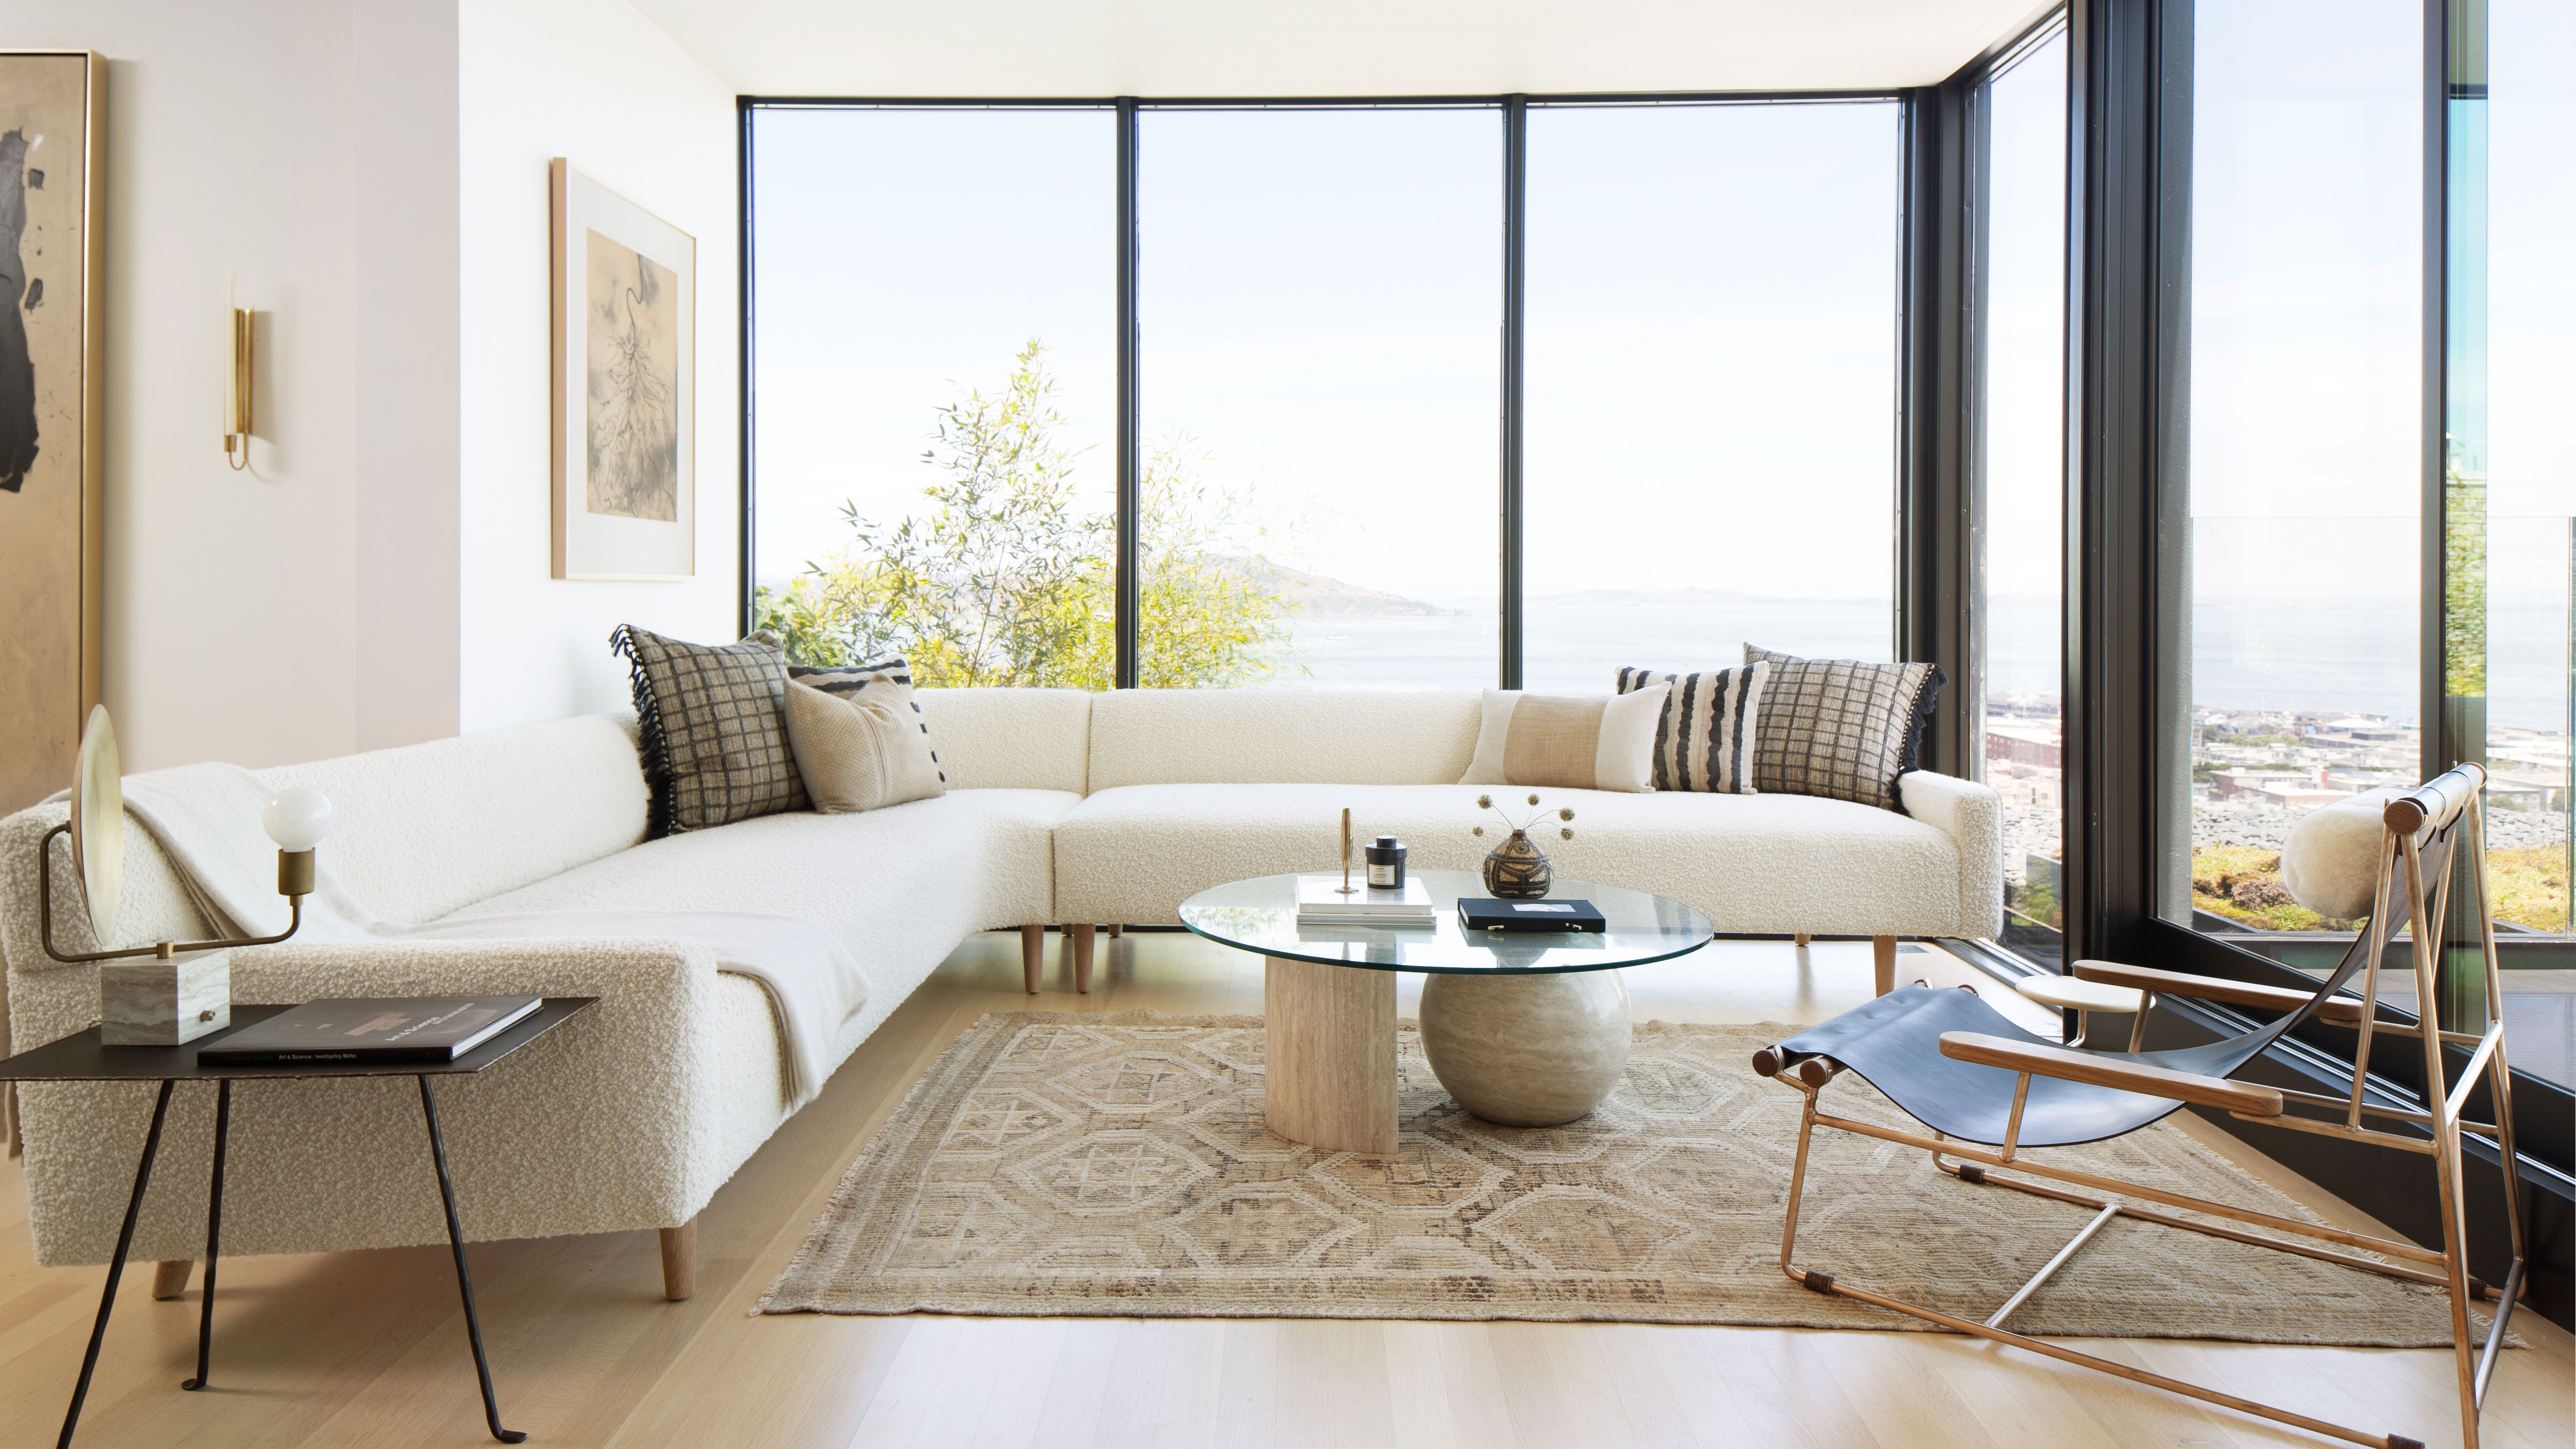 Minimalist living room ideas: 20 simple schemes to spark joy